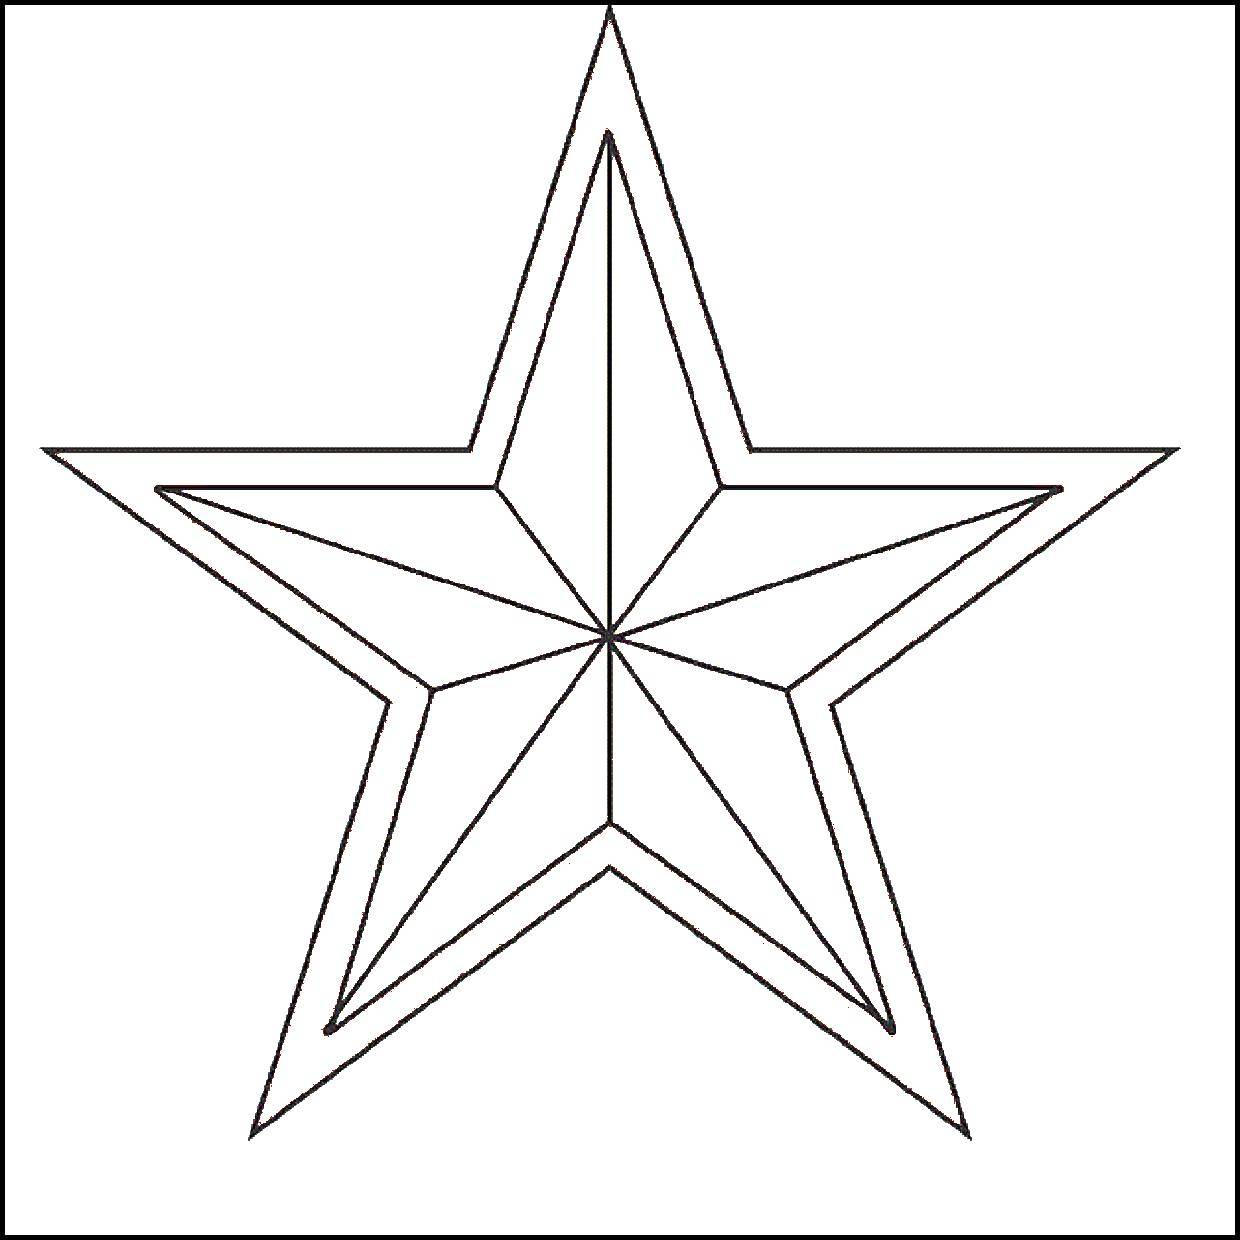 Название: Раскраска Красная звезда. Категория: Советские раскраски. Теги: советские знаки, военное, звезда, СССР.